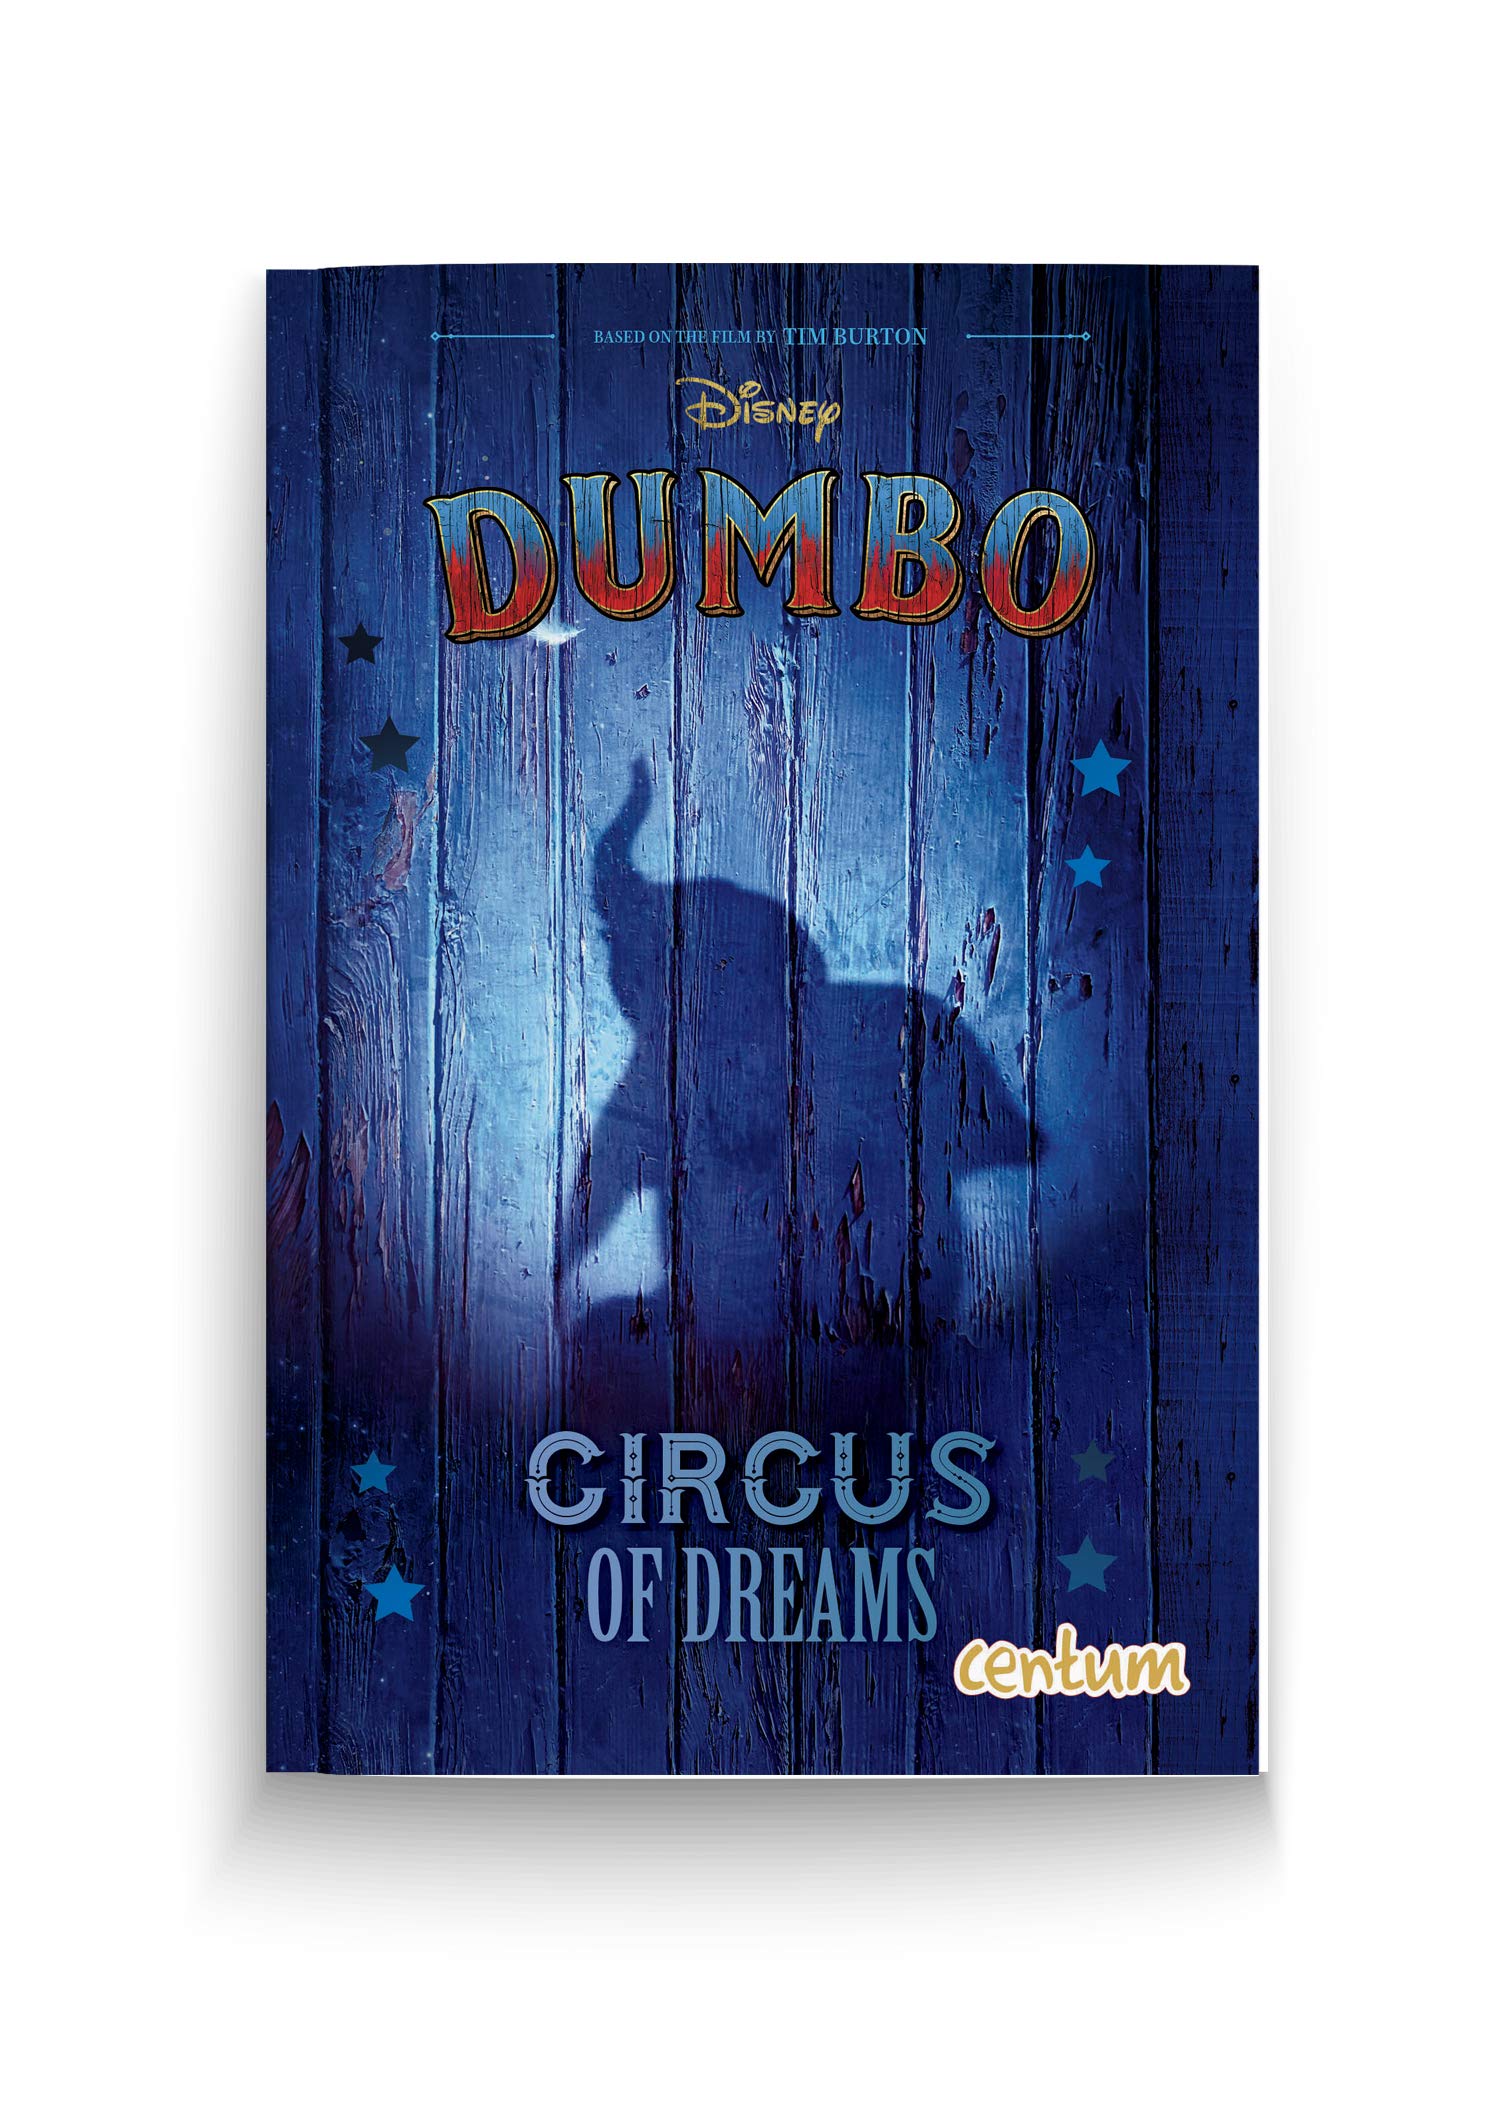 Disney Dumbo: Circus of dreams